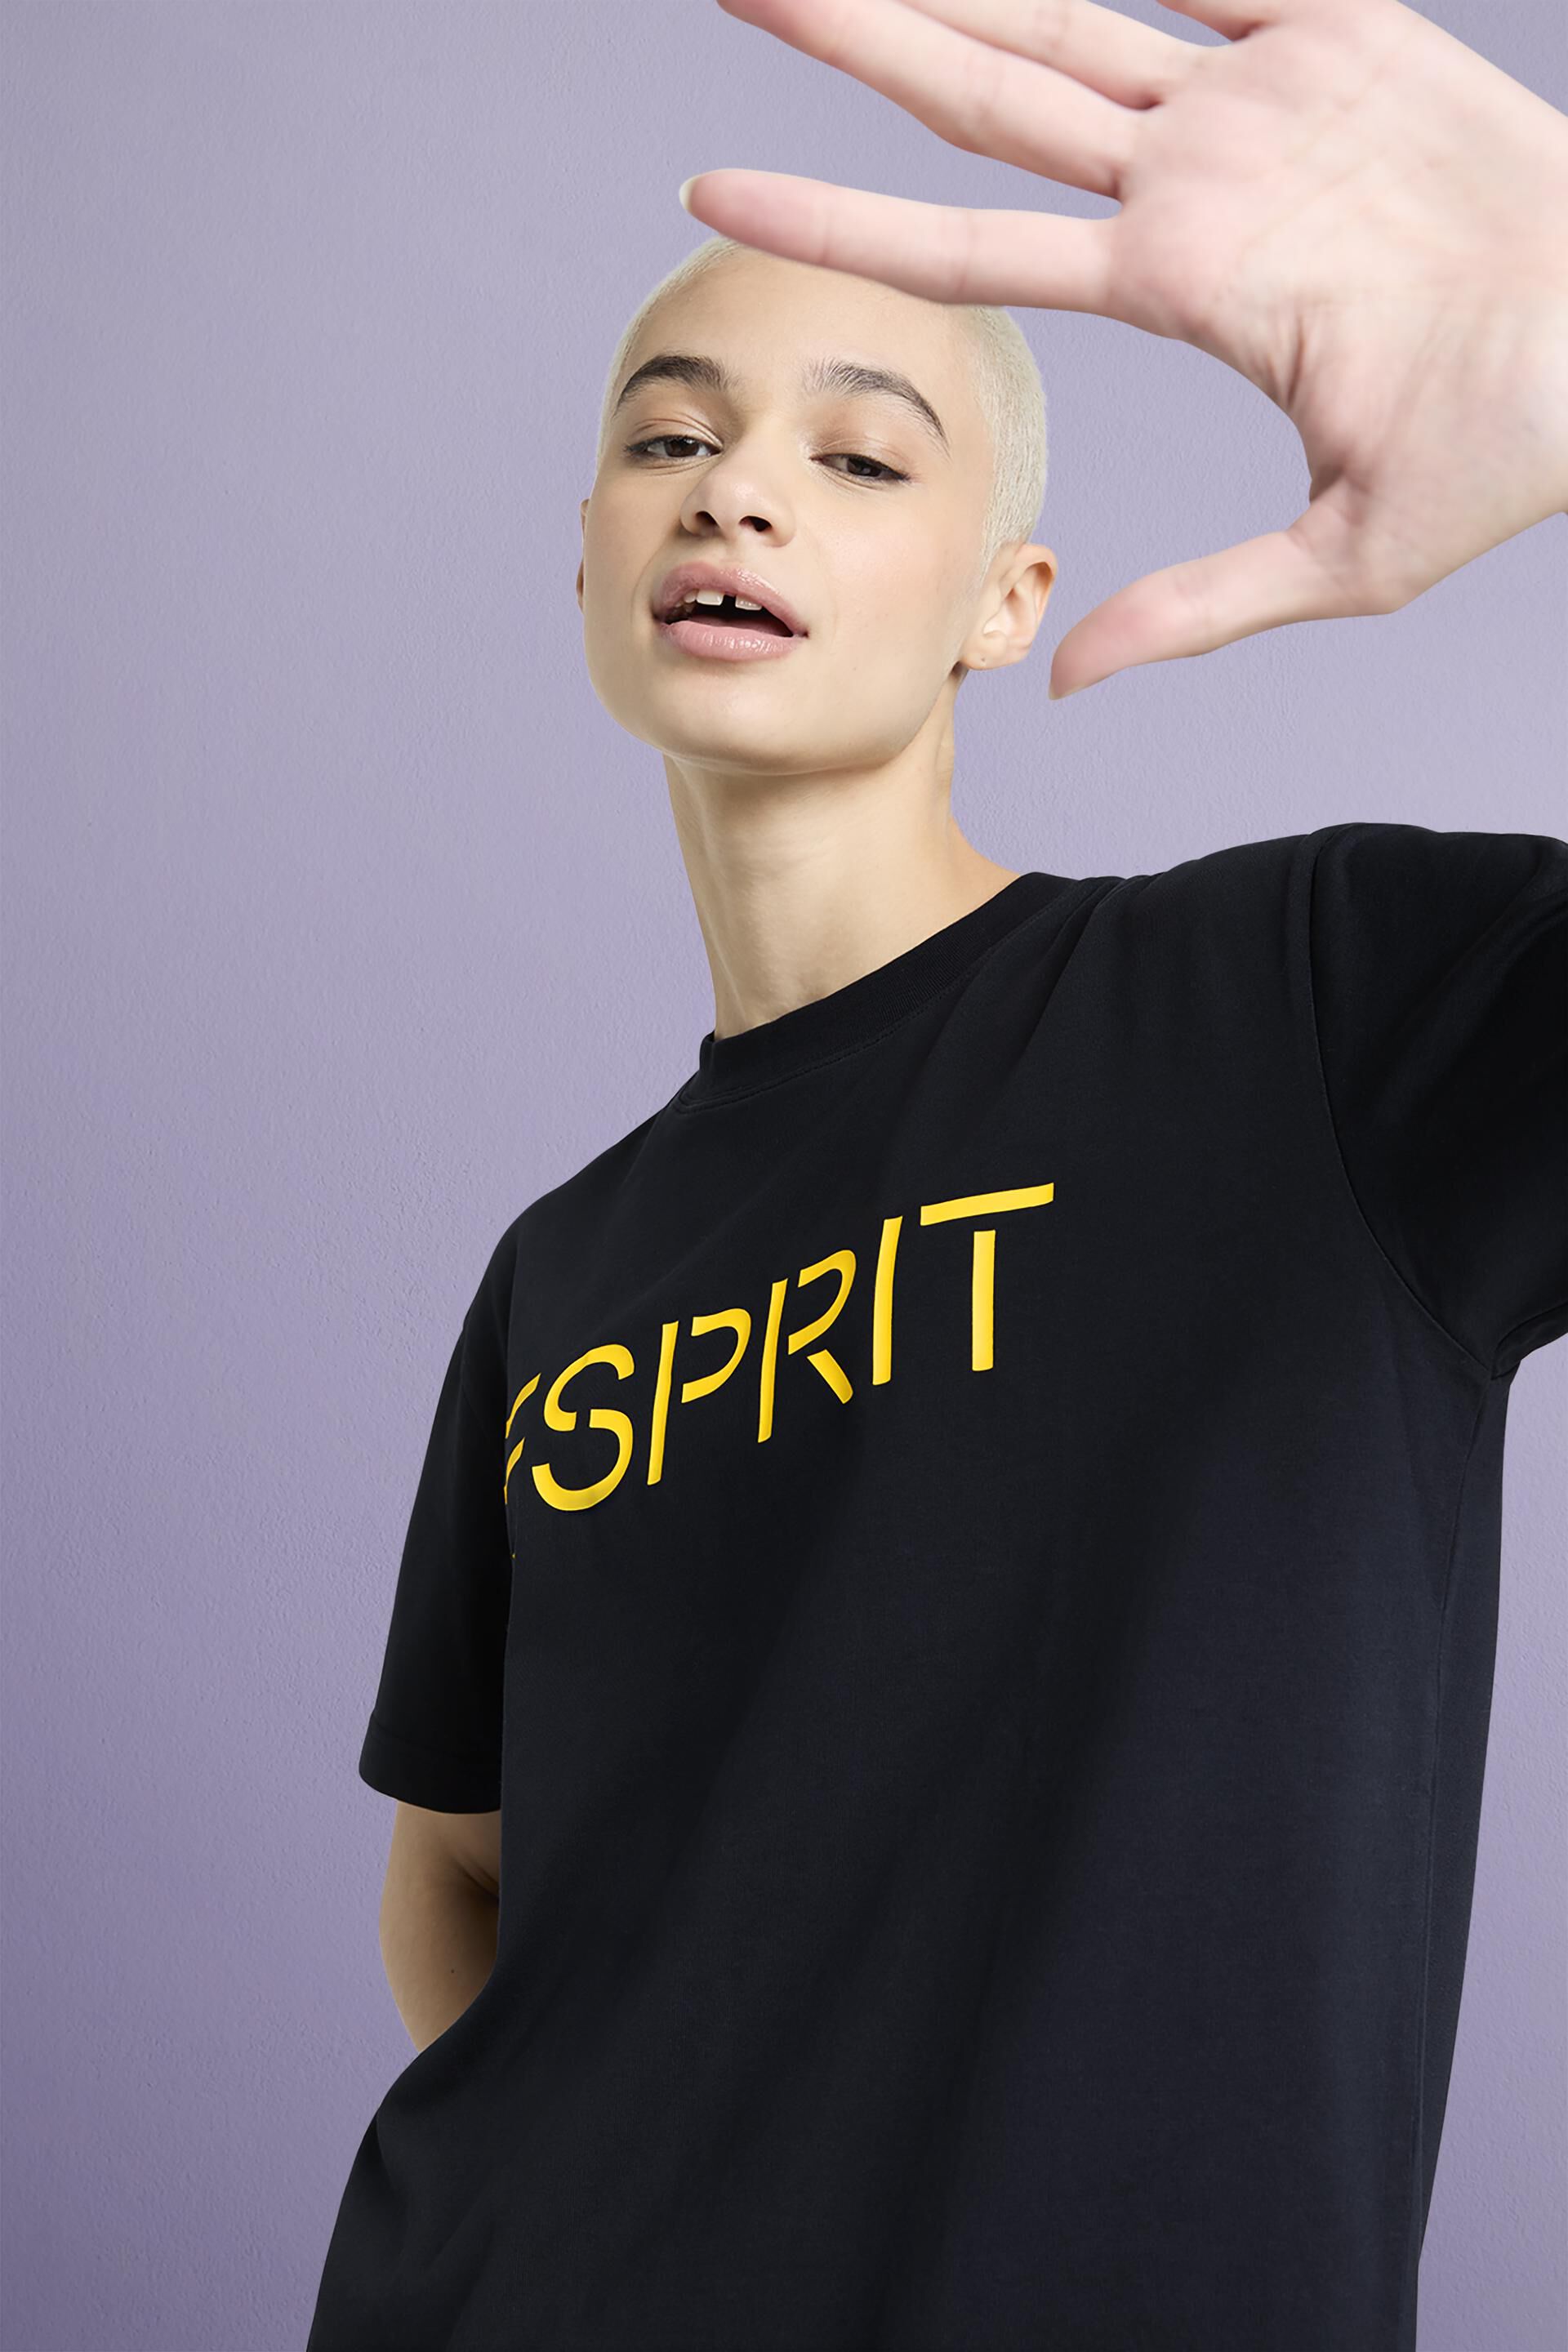 Esprit mit Jersey-Baumwolle aus T-Shirt Logo